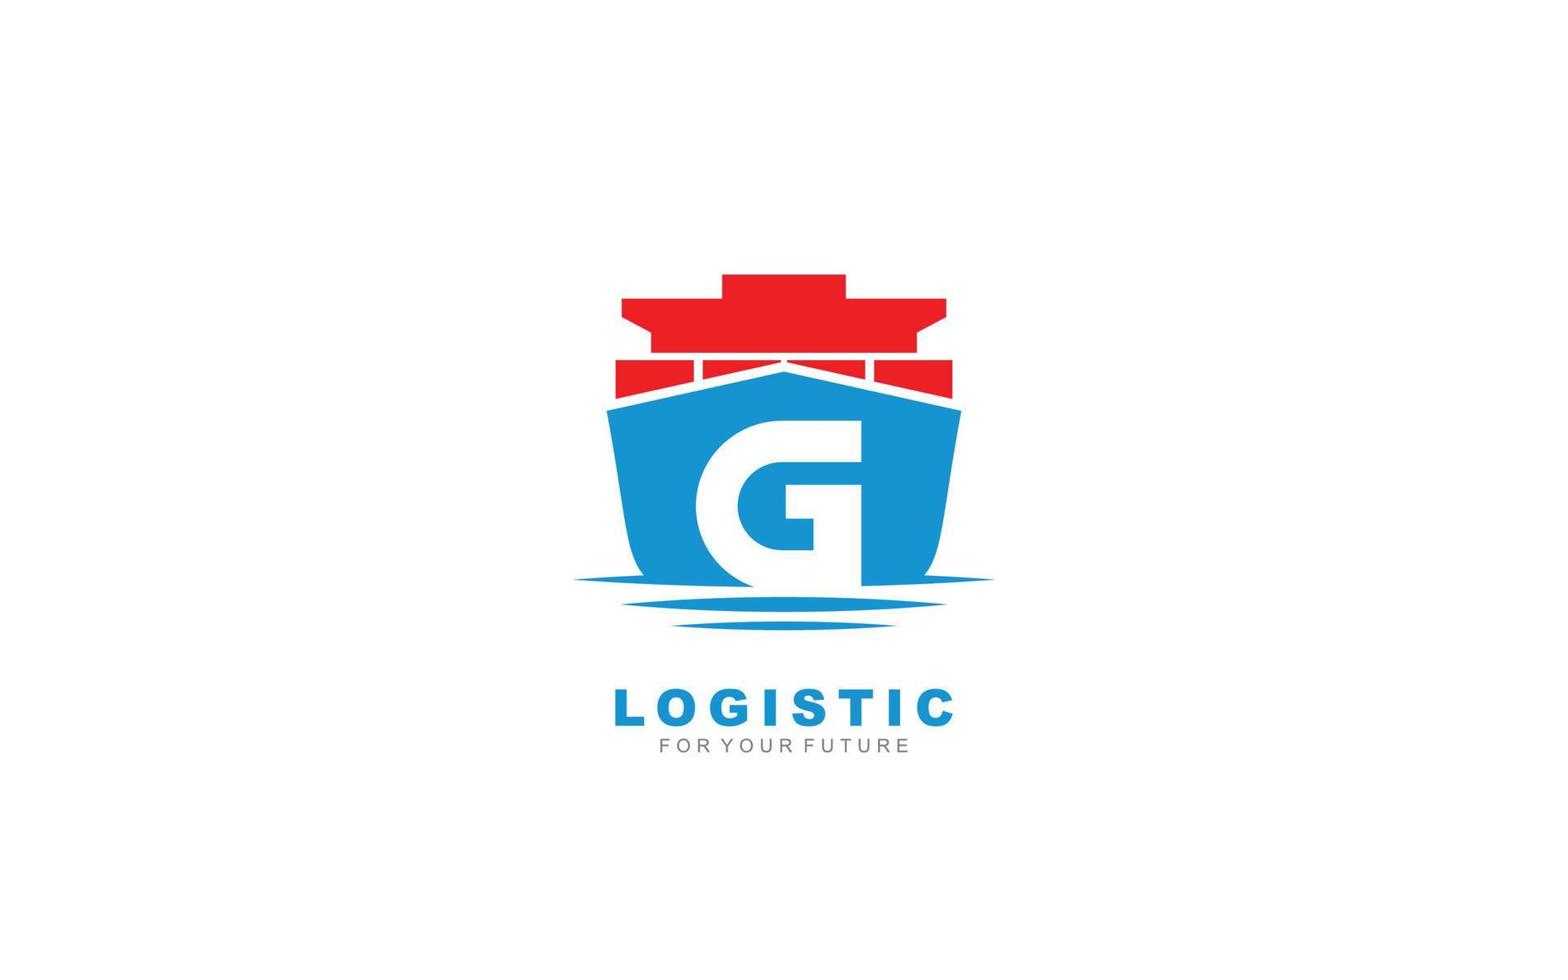 g logo logistic para empresa de marca. ilustración de vector de plantilla de envío para su marca.